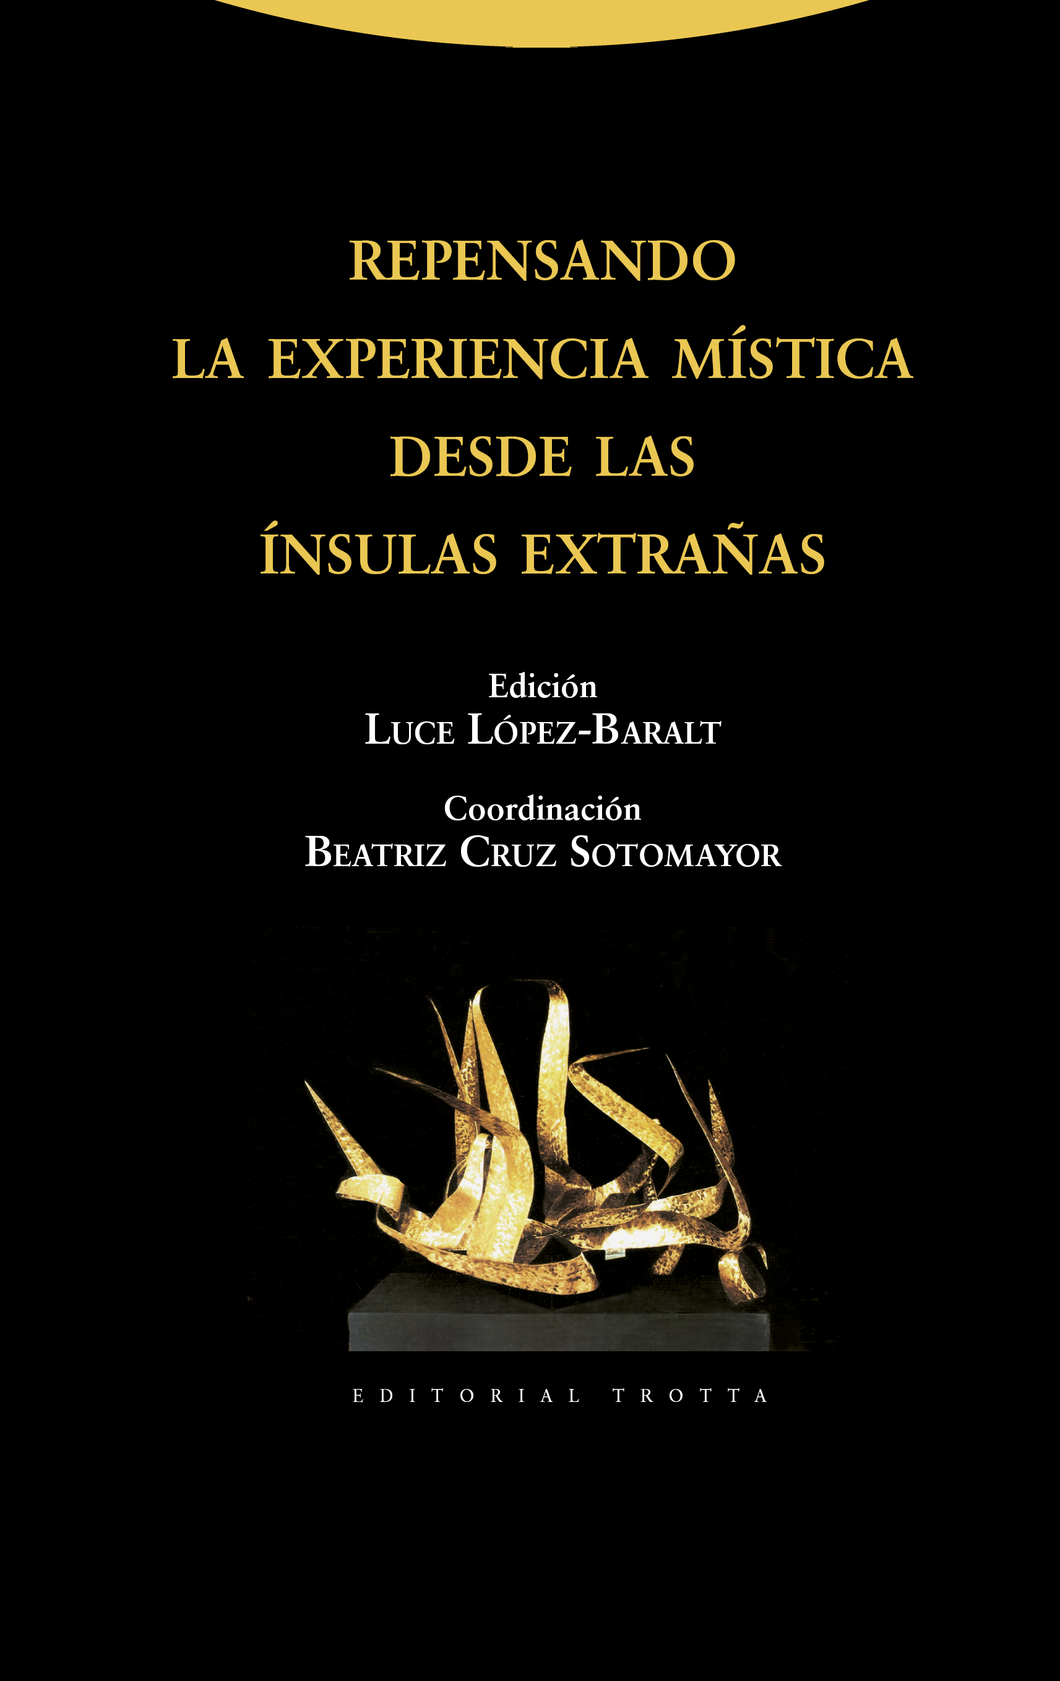 REPENSANDO LA EXPERIENCIA MÍSTICA - Edición de Luce López Baralt / Coordinación de Beatriz Cruz Sotomayor